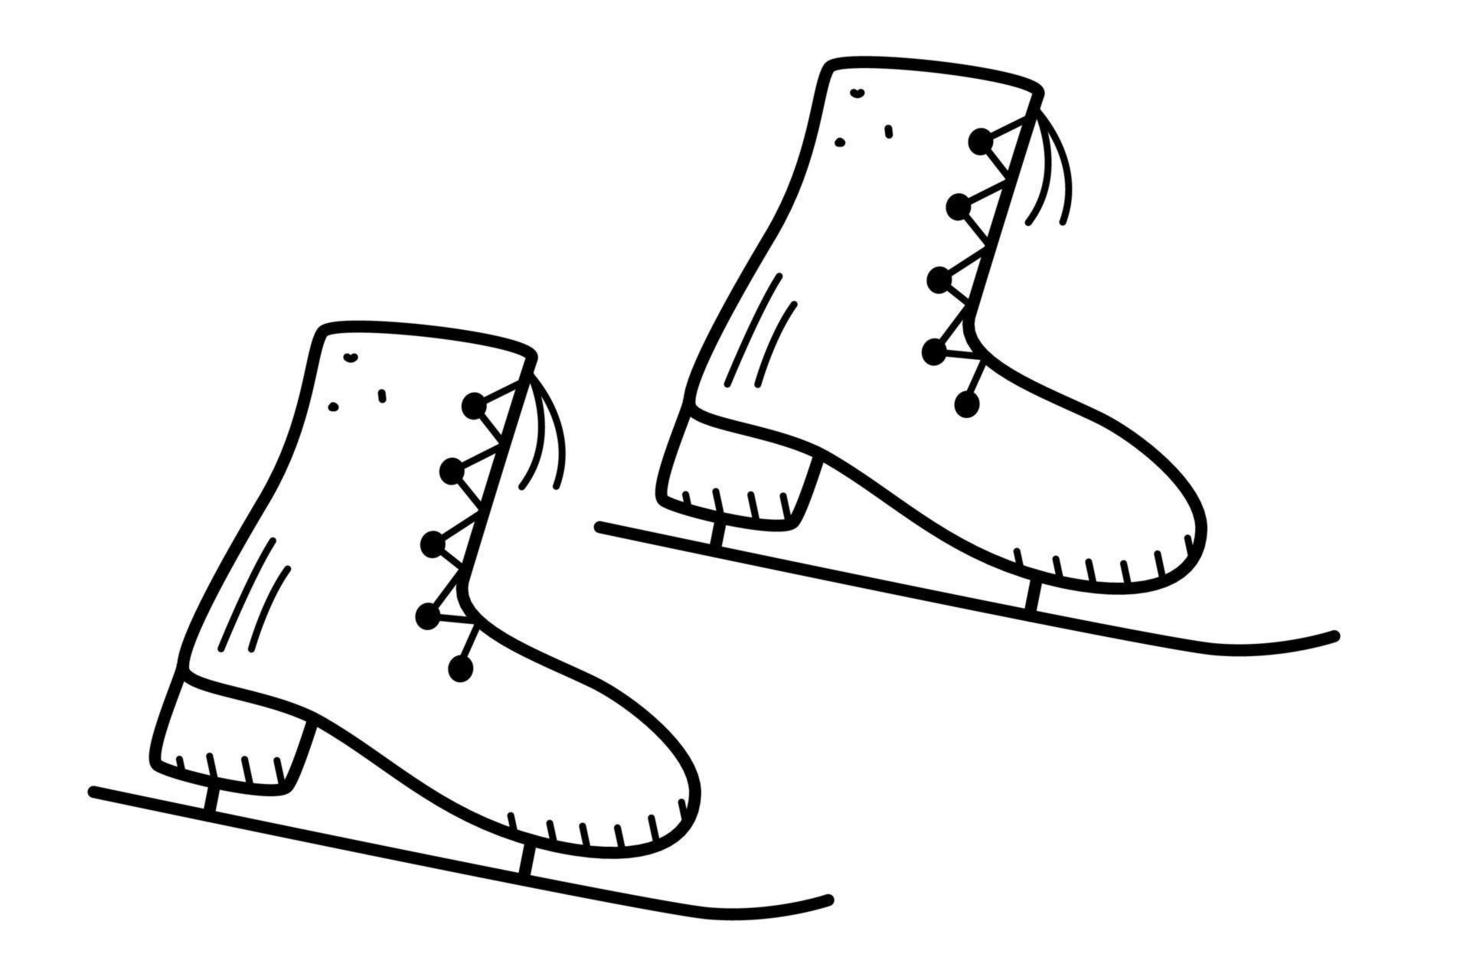 patins de gelo, ícone de patinação artística. elemento de doodle vetorial, ilustração de desenho animado, conceito de atividades ao ar livre ou esportes vetor